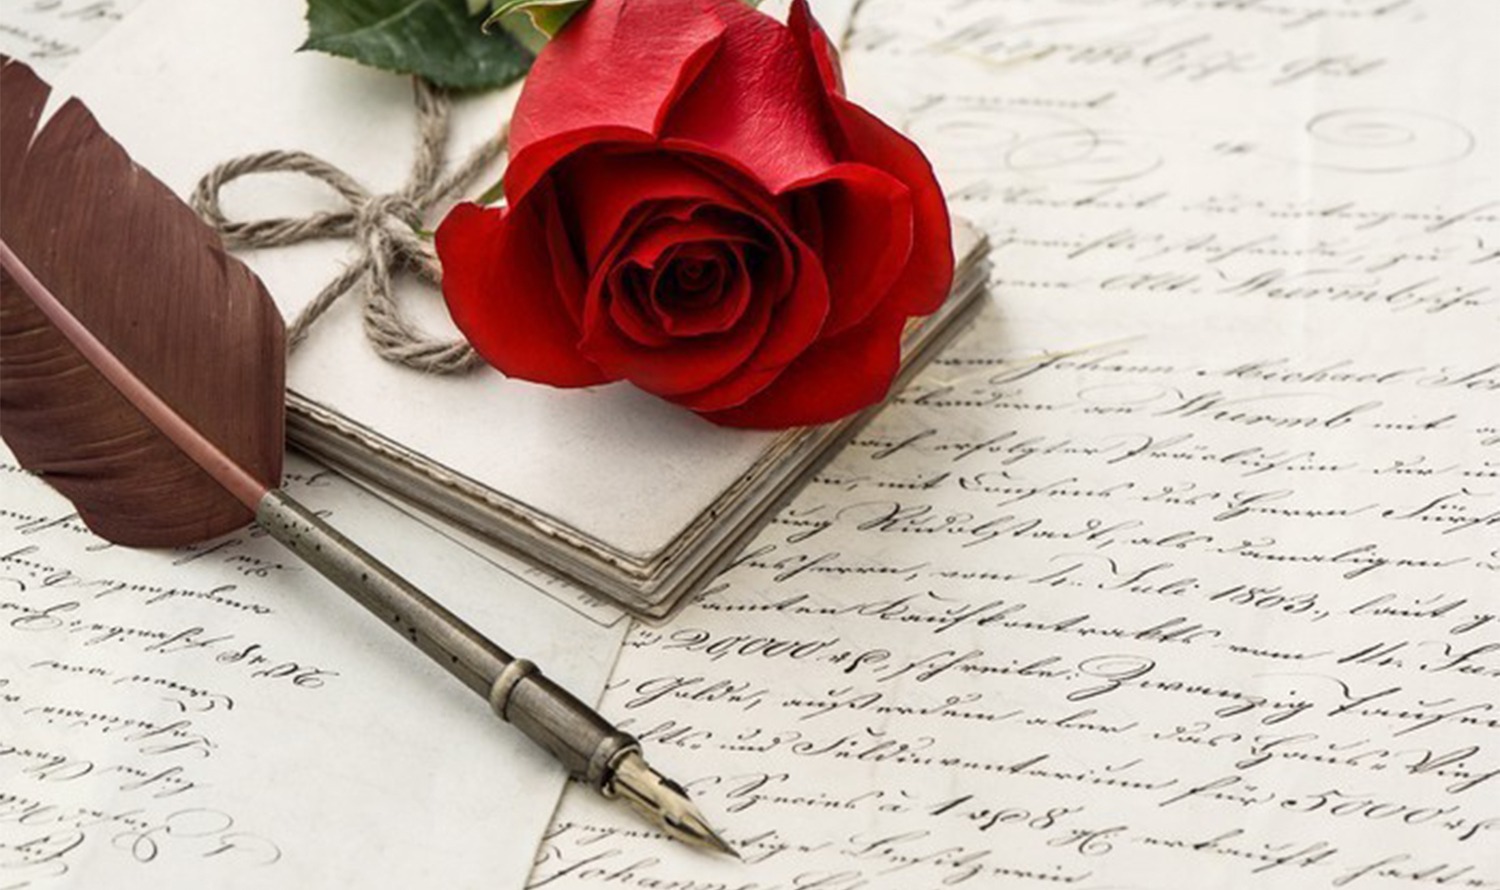 На картині зображена червона троянда, стара авторучка та кілька рукописних літер, що створює ностальгічну атмосферу.